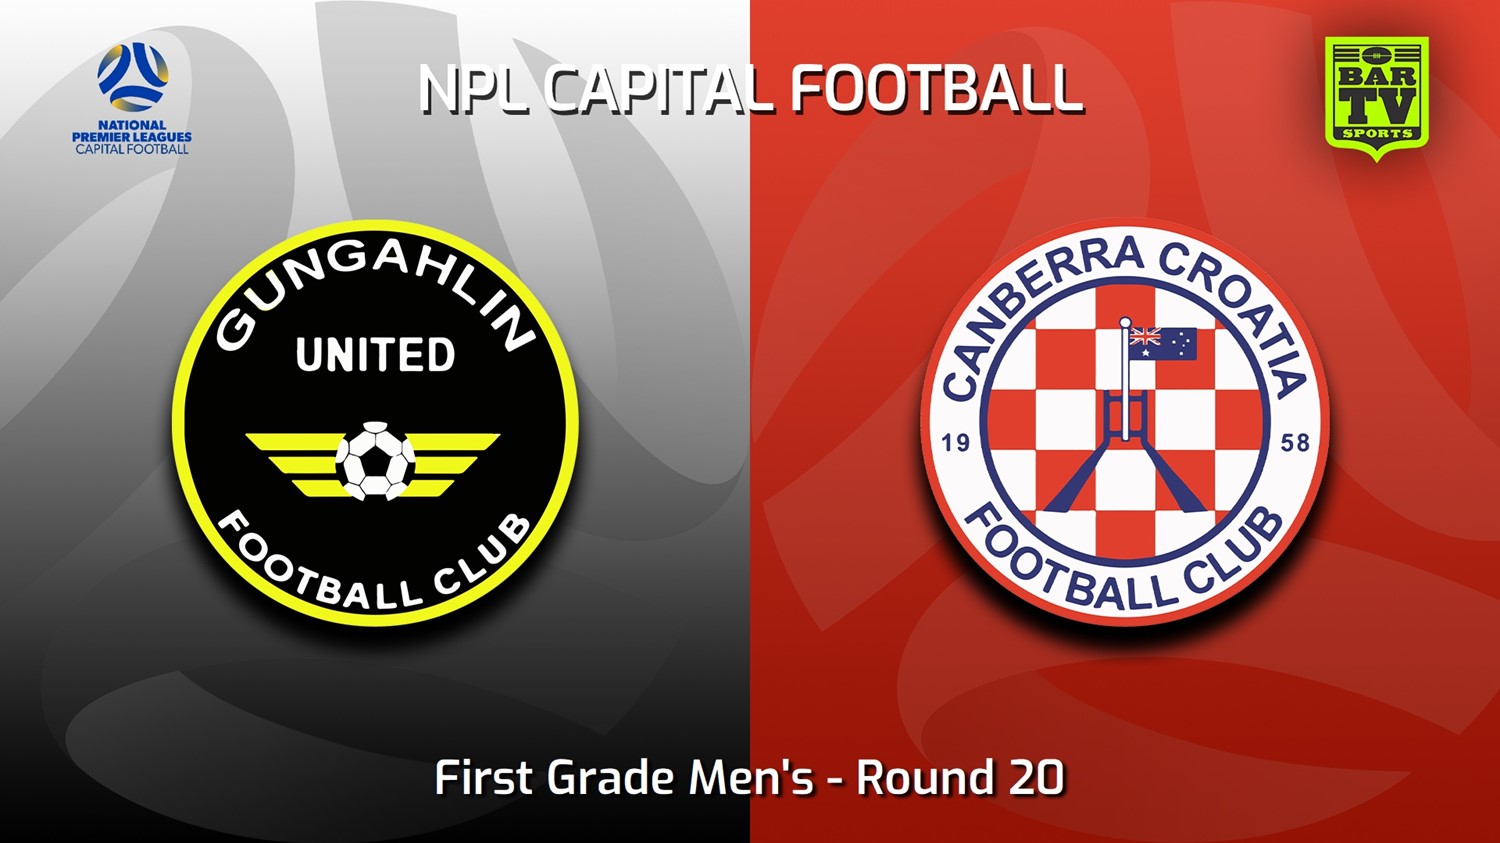 230827-Capital NPL Round 20 - Gungahlin United v Canberra Croatia FC Minigame Slate Image